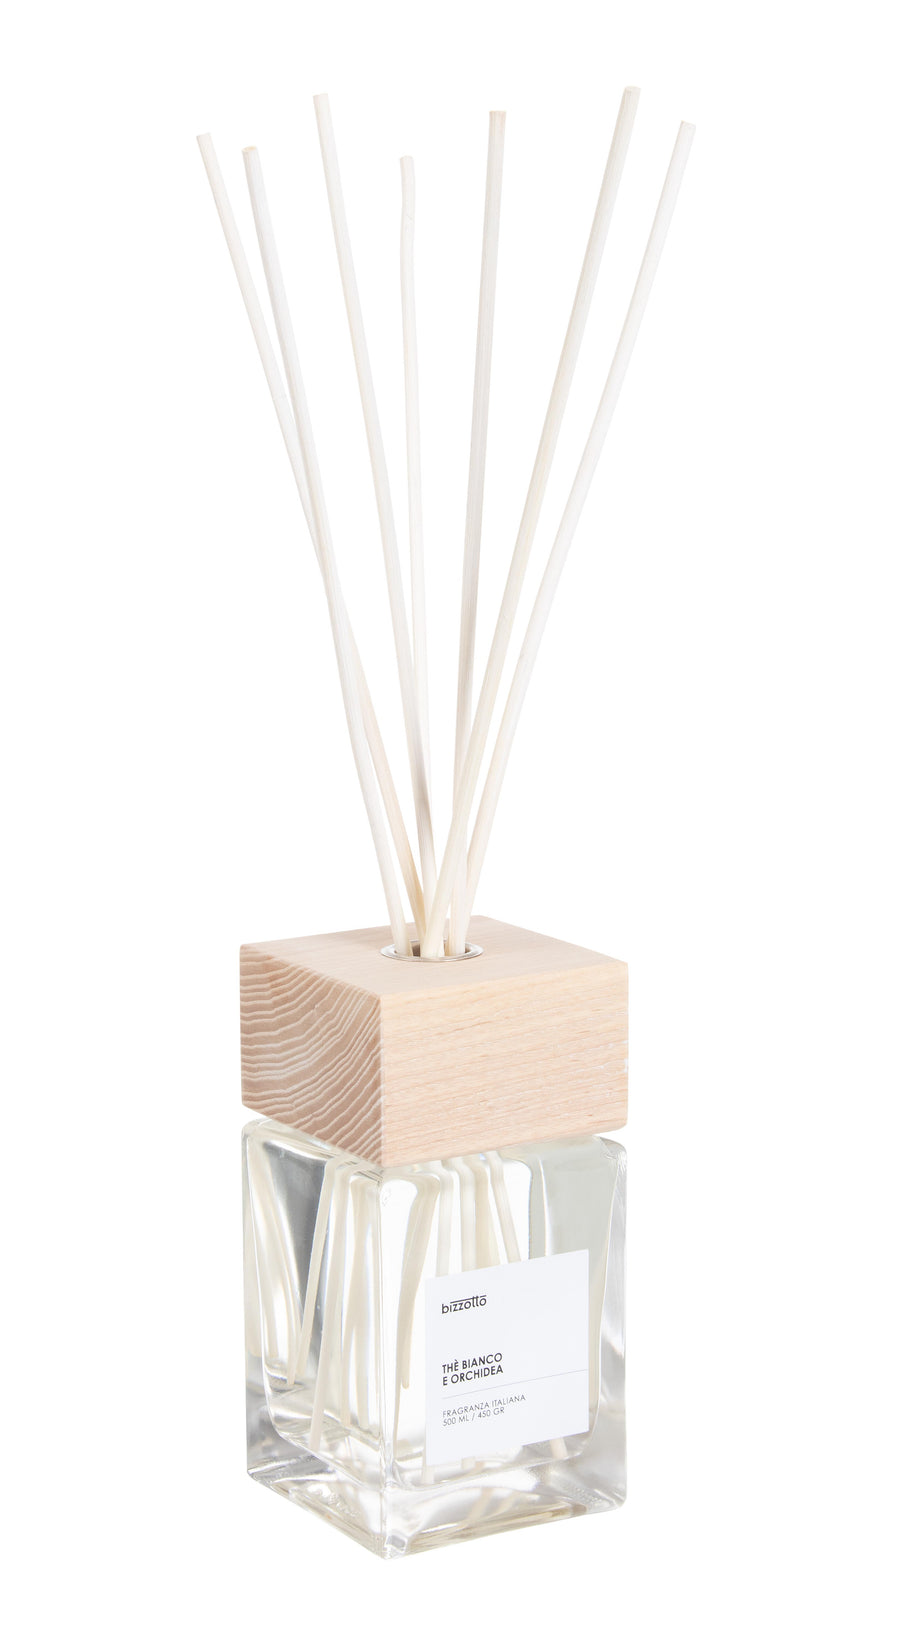 contenitore elegante in vetro con tappo in legno e bastoncini , contenente essenza profumata The Bianco .